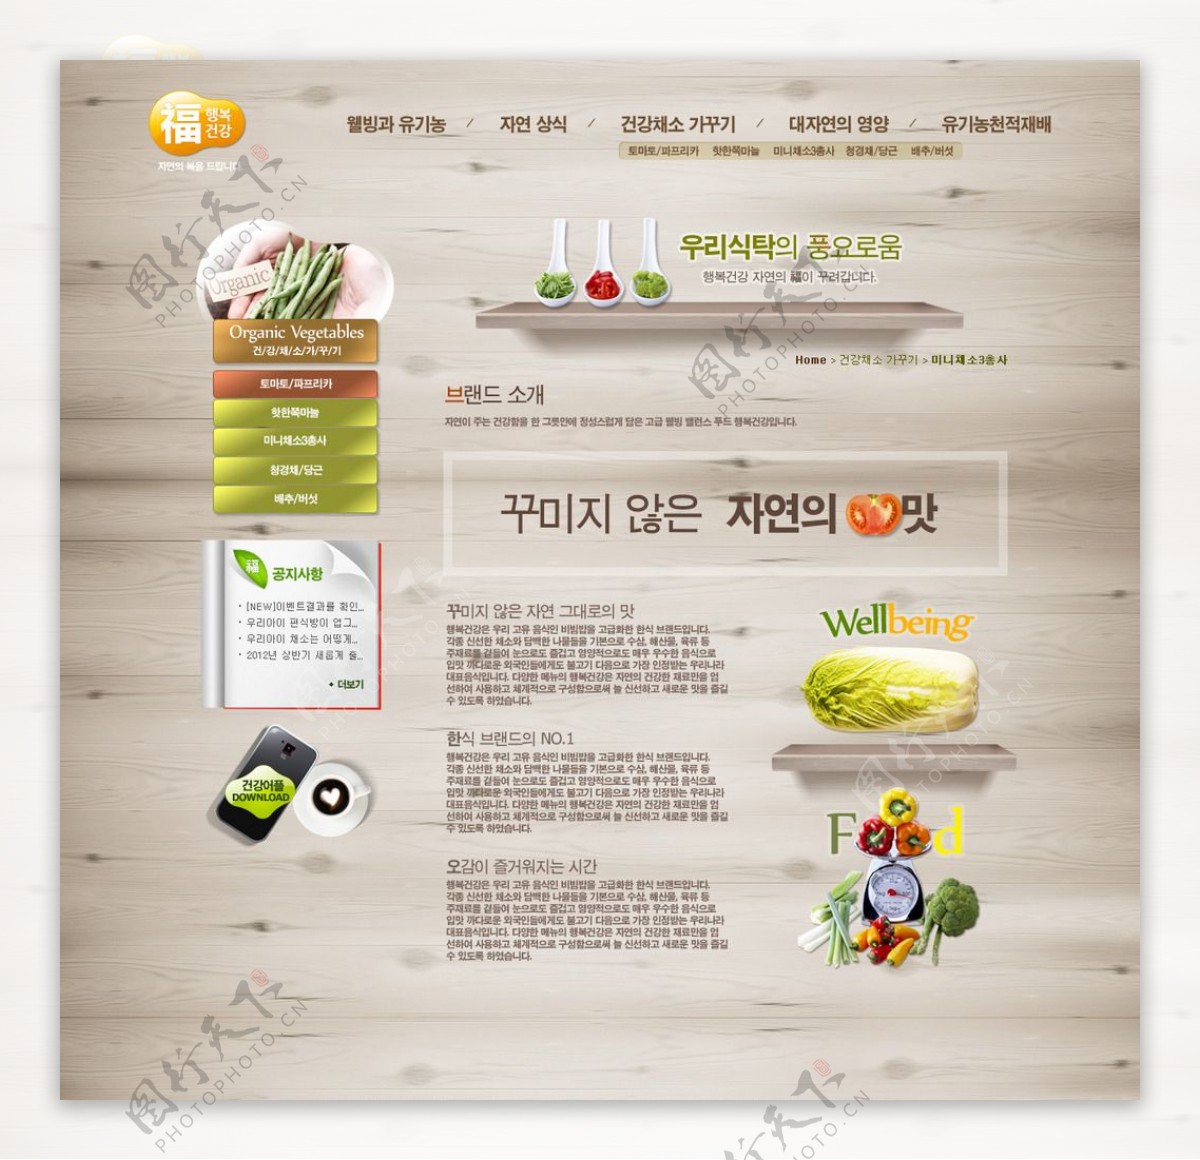 水果蔬菜宣传网页模板图片